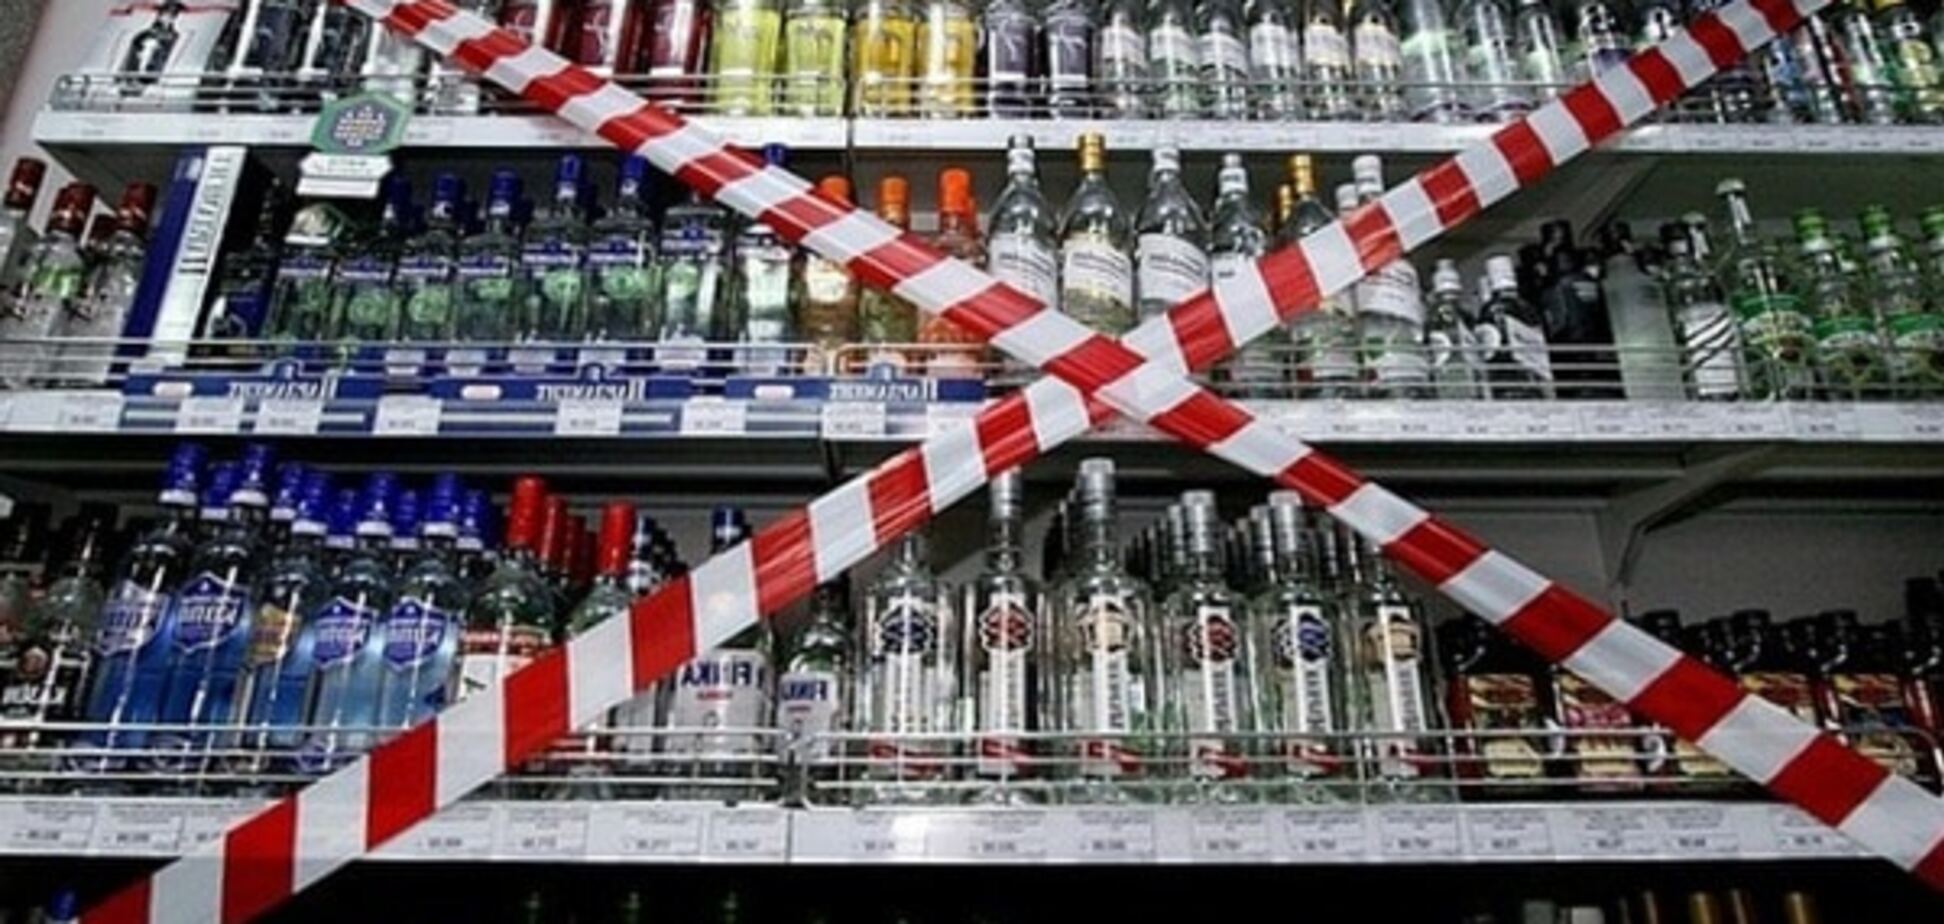 В Украине хотят запретить продажу алкоголя и сигарет ночью